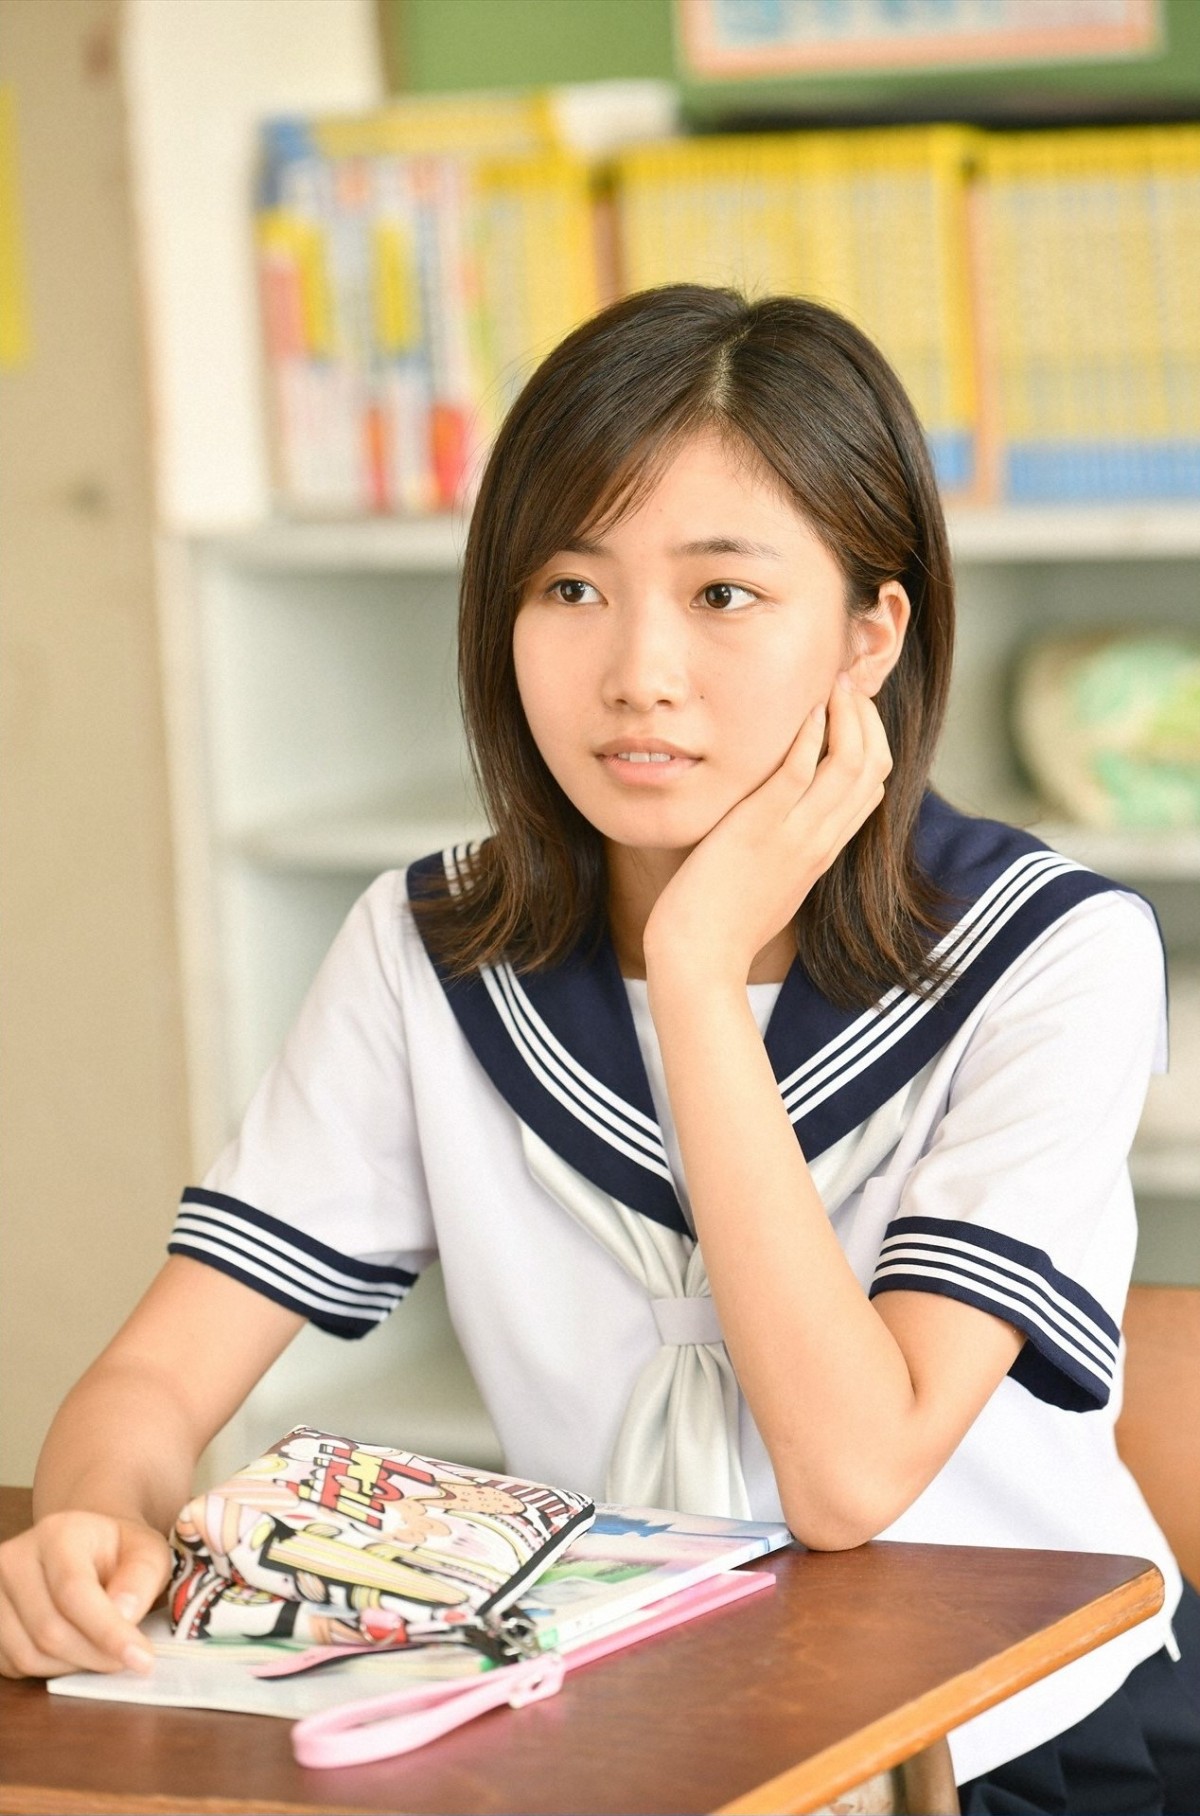 有村架純主演『中学聖日記』、ネットで話題の新人女優・小野莉奈が出演